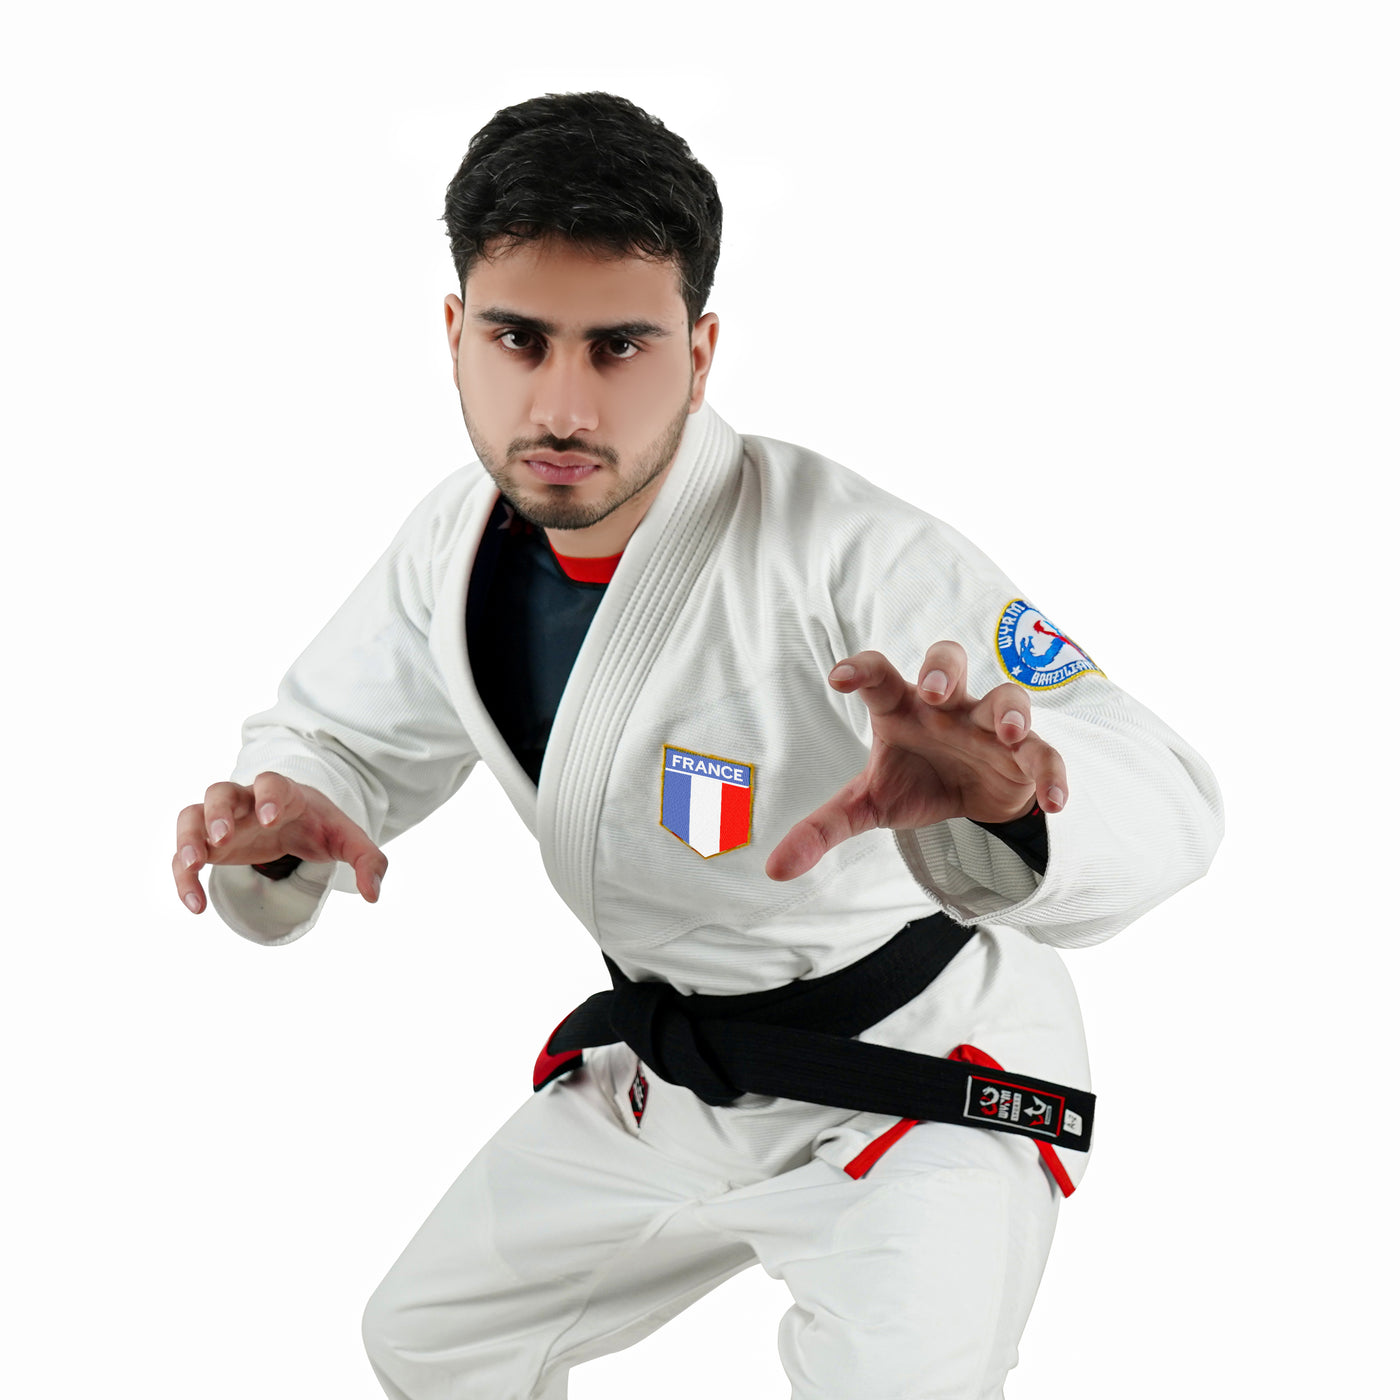 French White Brazilian Jiu Jitsu Gi With Built-in Rash Guard